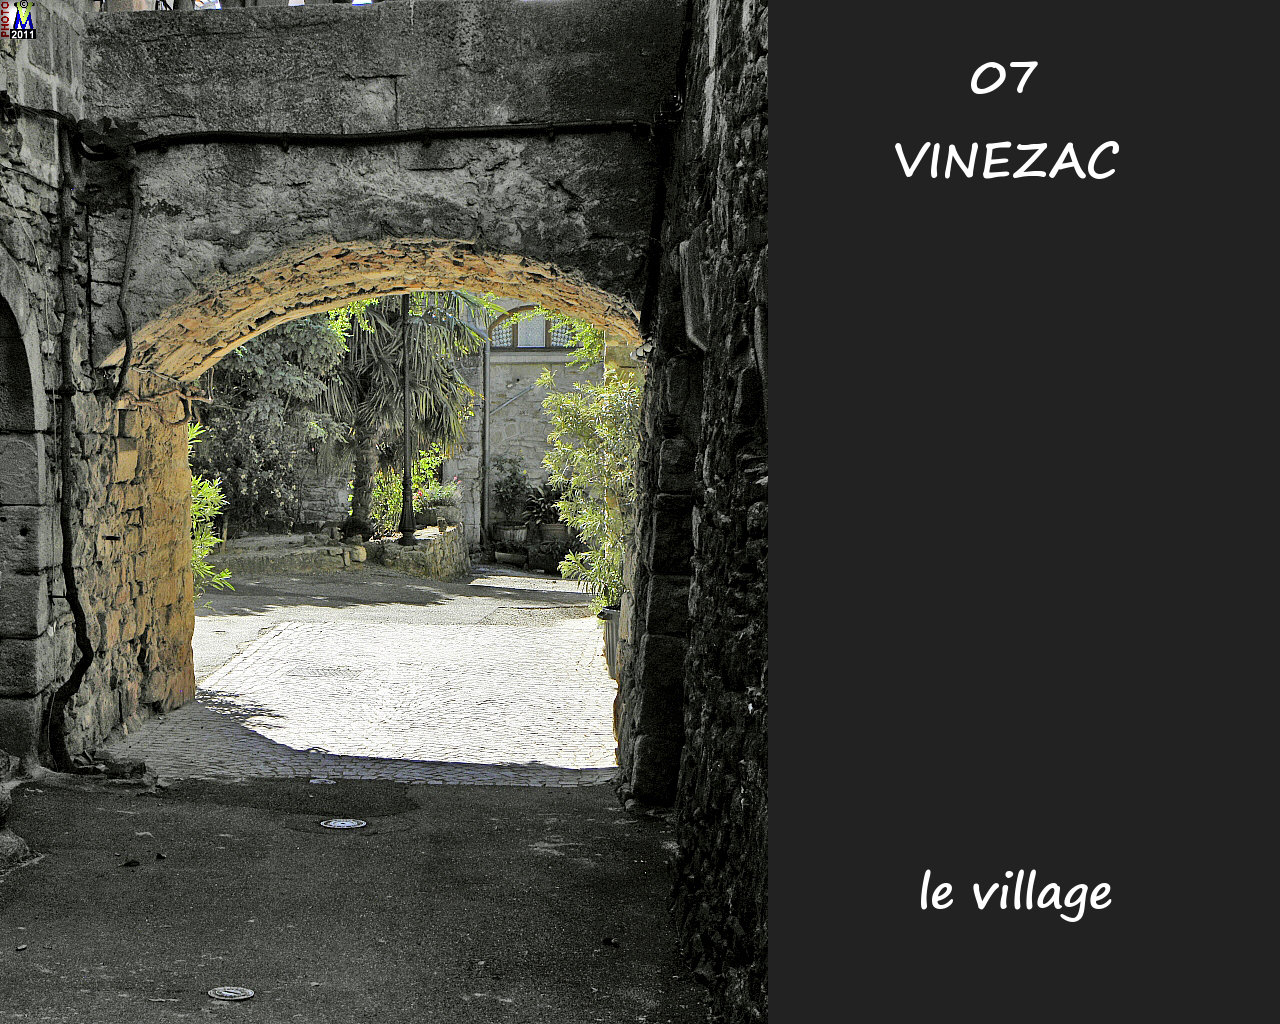 07VINEZAC_village_106.jpg